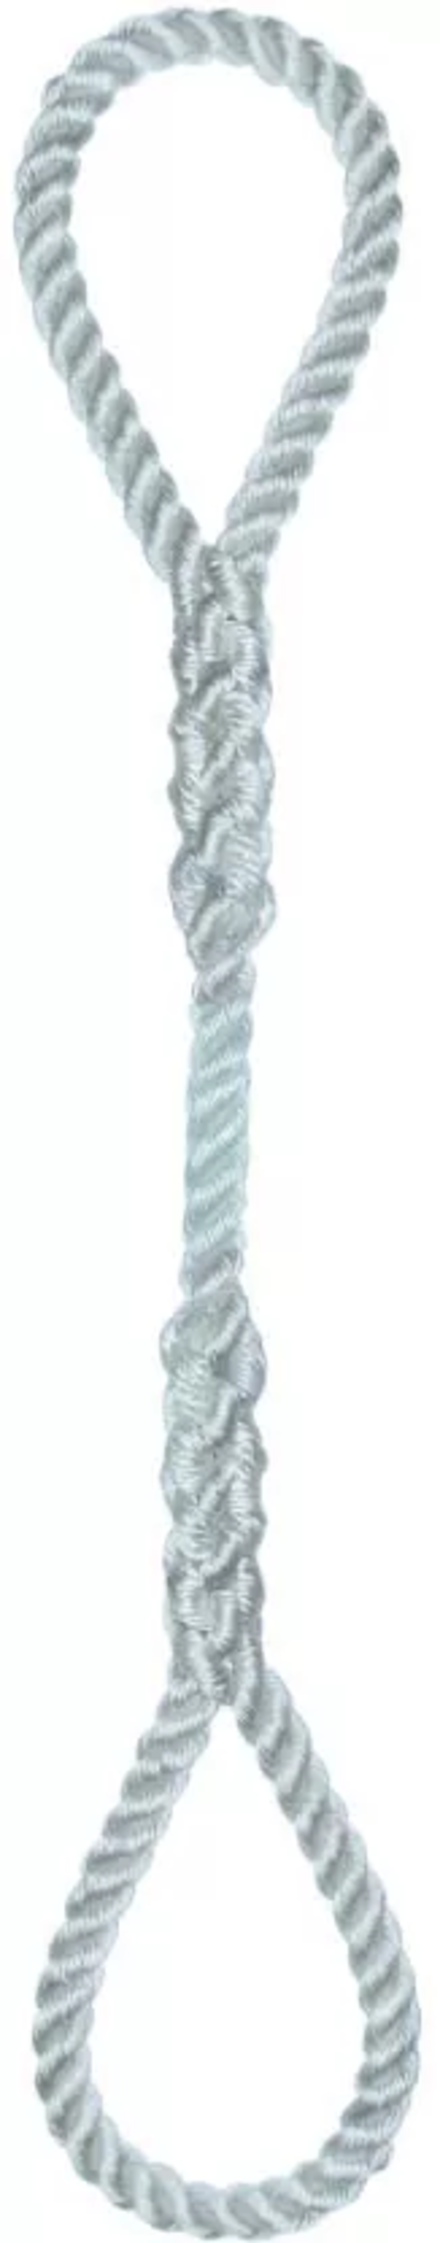 Élingue corde d.14 mm cmu 269 kg 2 grandes boucles long 1 m LEVAC - 4404H